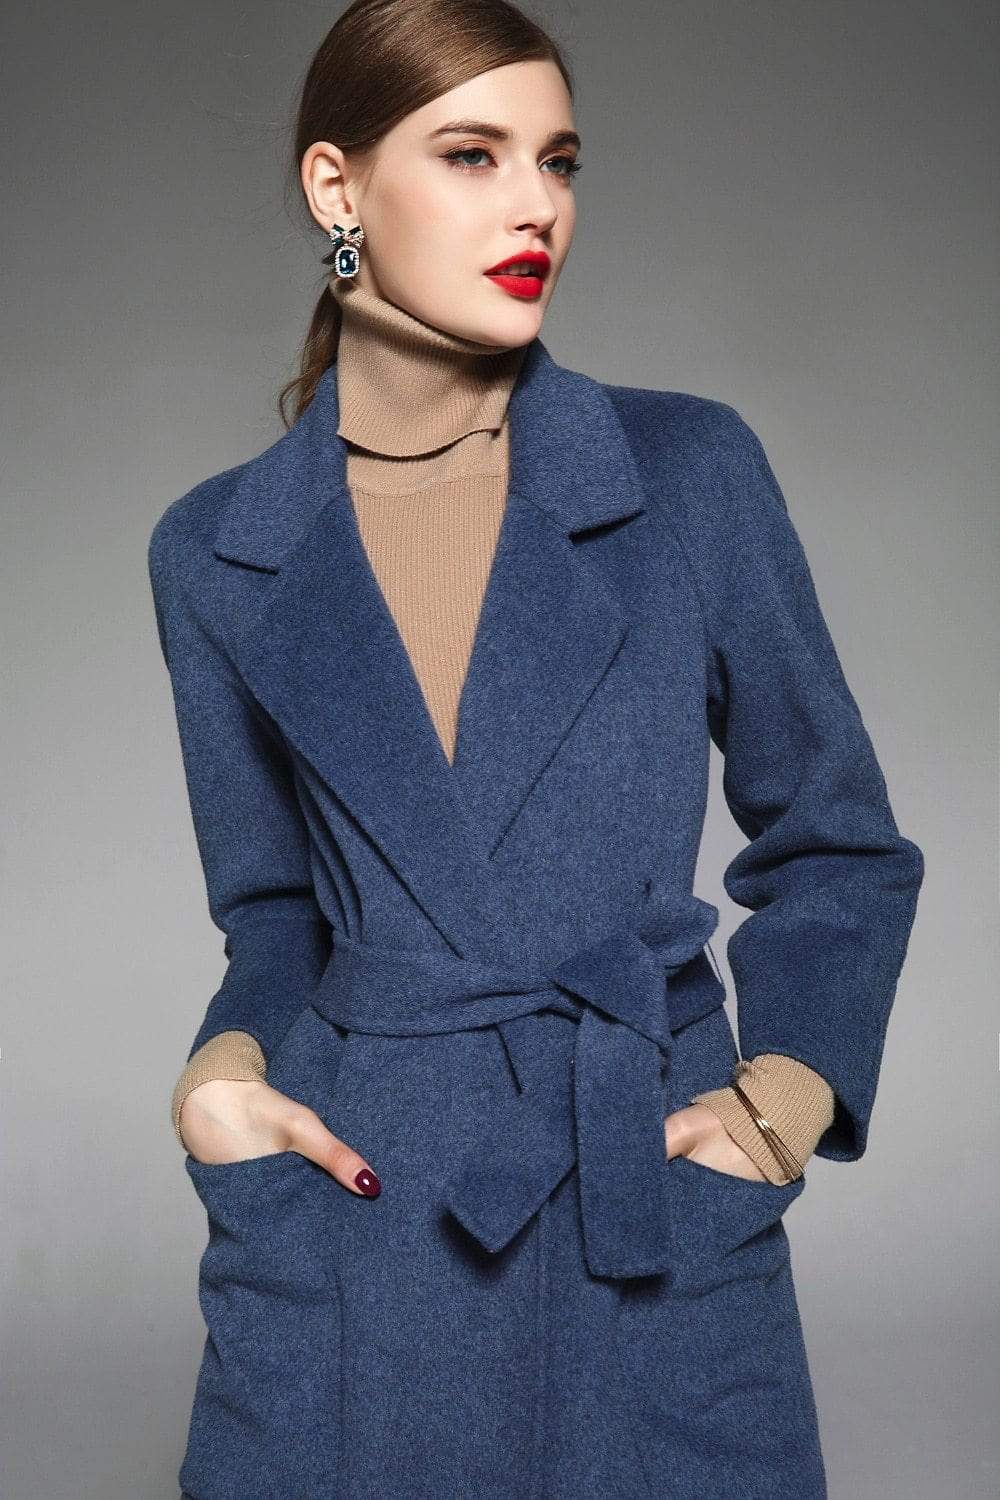 Her Shop Coats, Jackets & Blazers 100% Wool Coat for Elegant Women